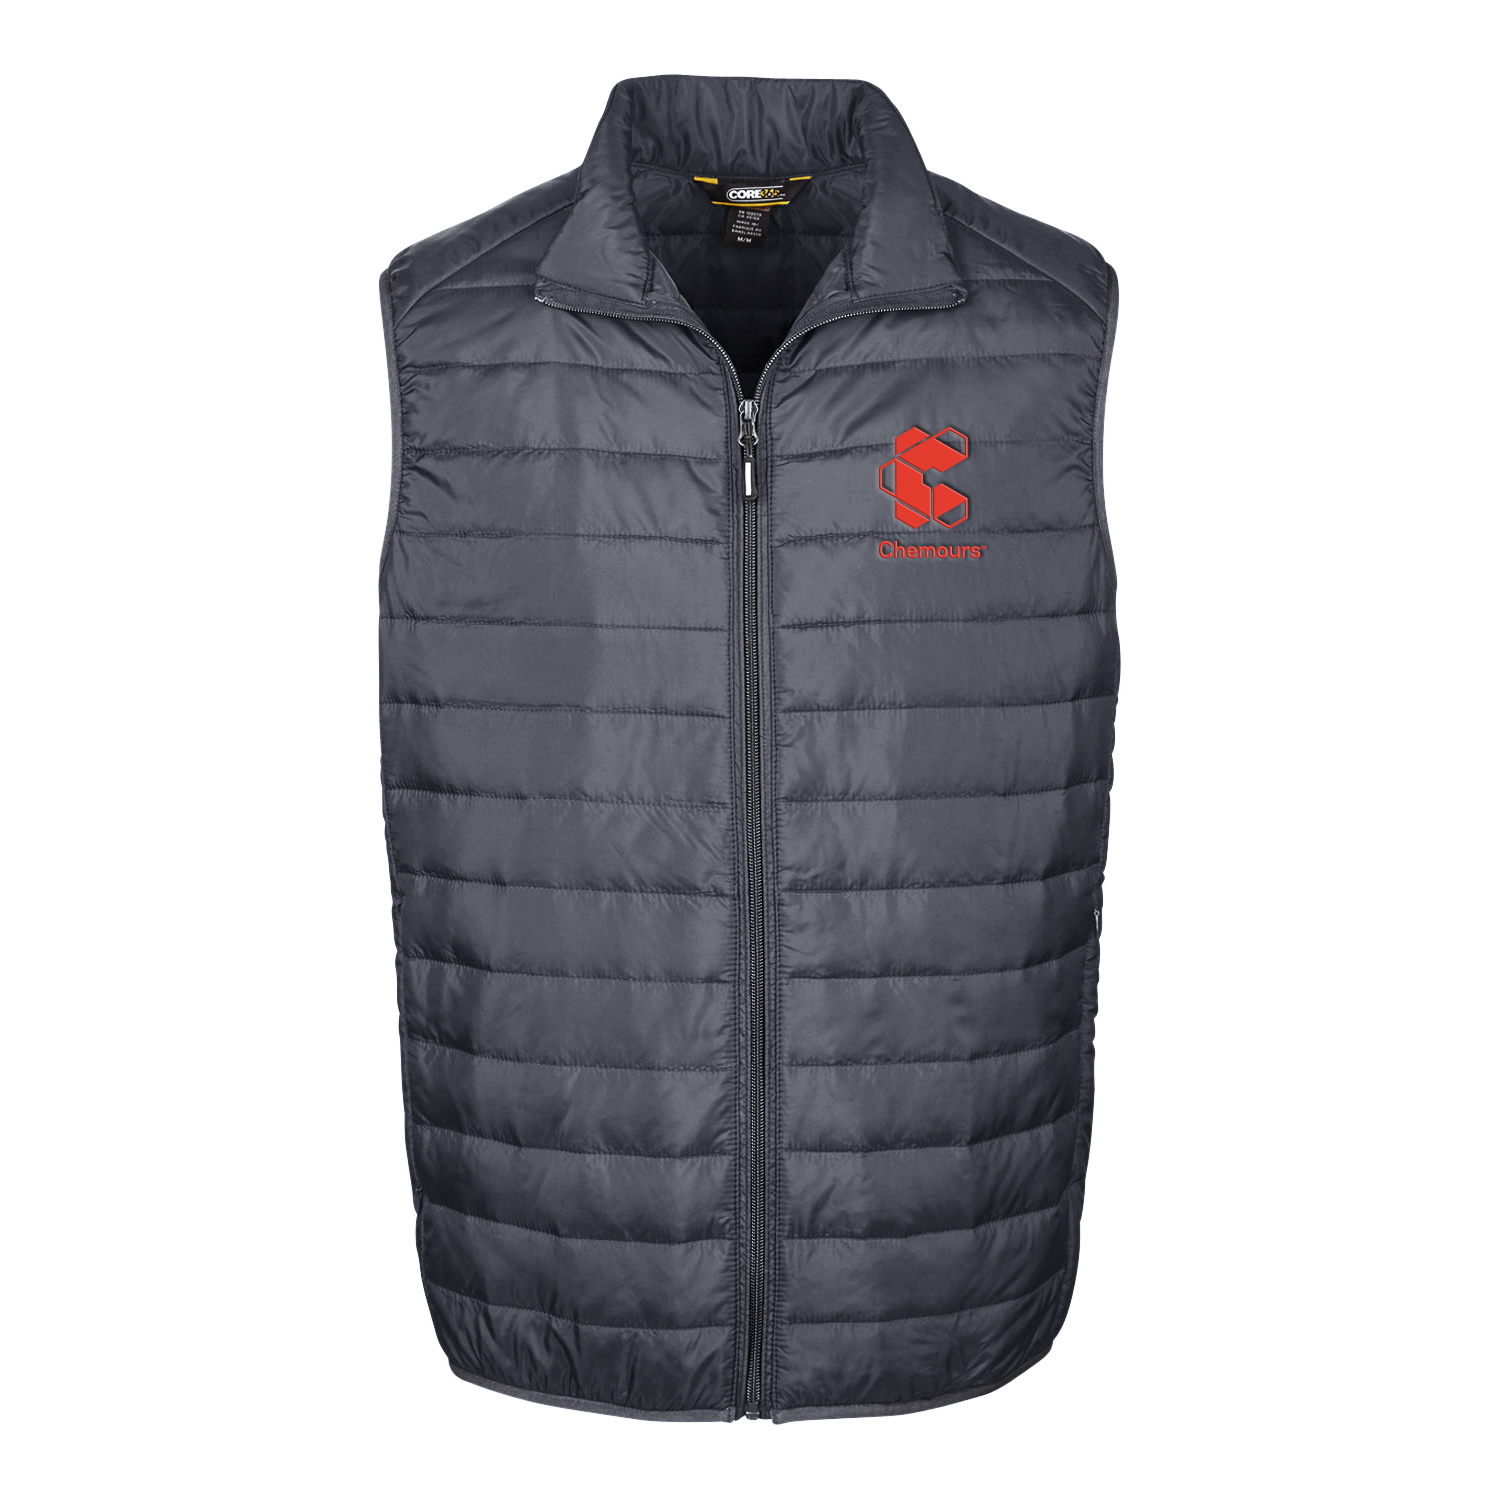 Core 365 Men's Prevail Packable Puffer Vest w/ Vertical Logo